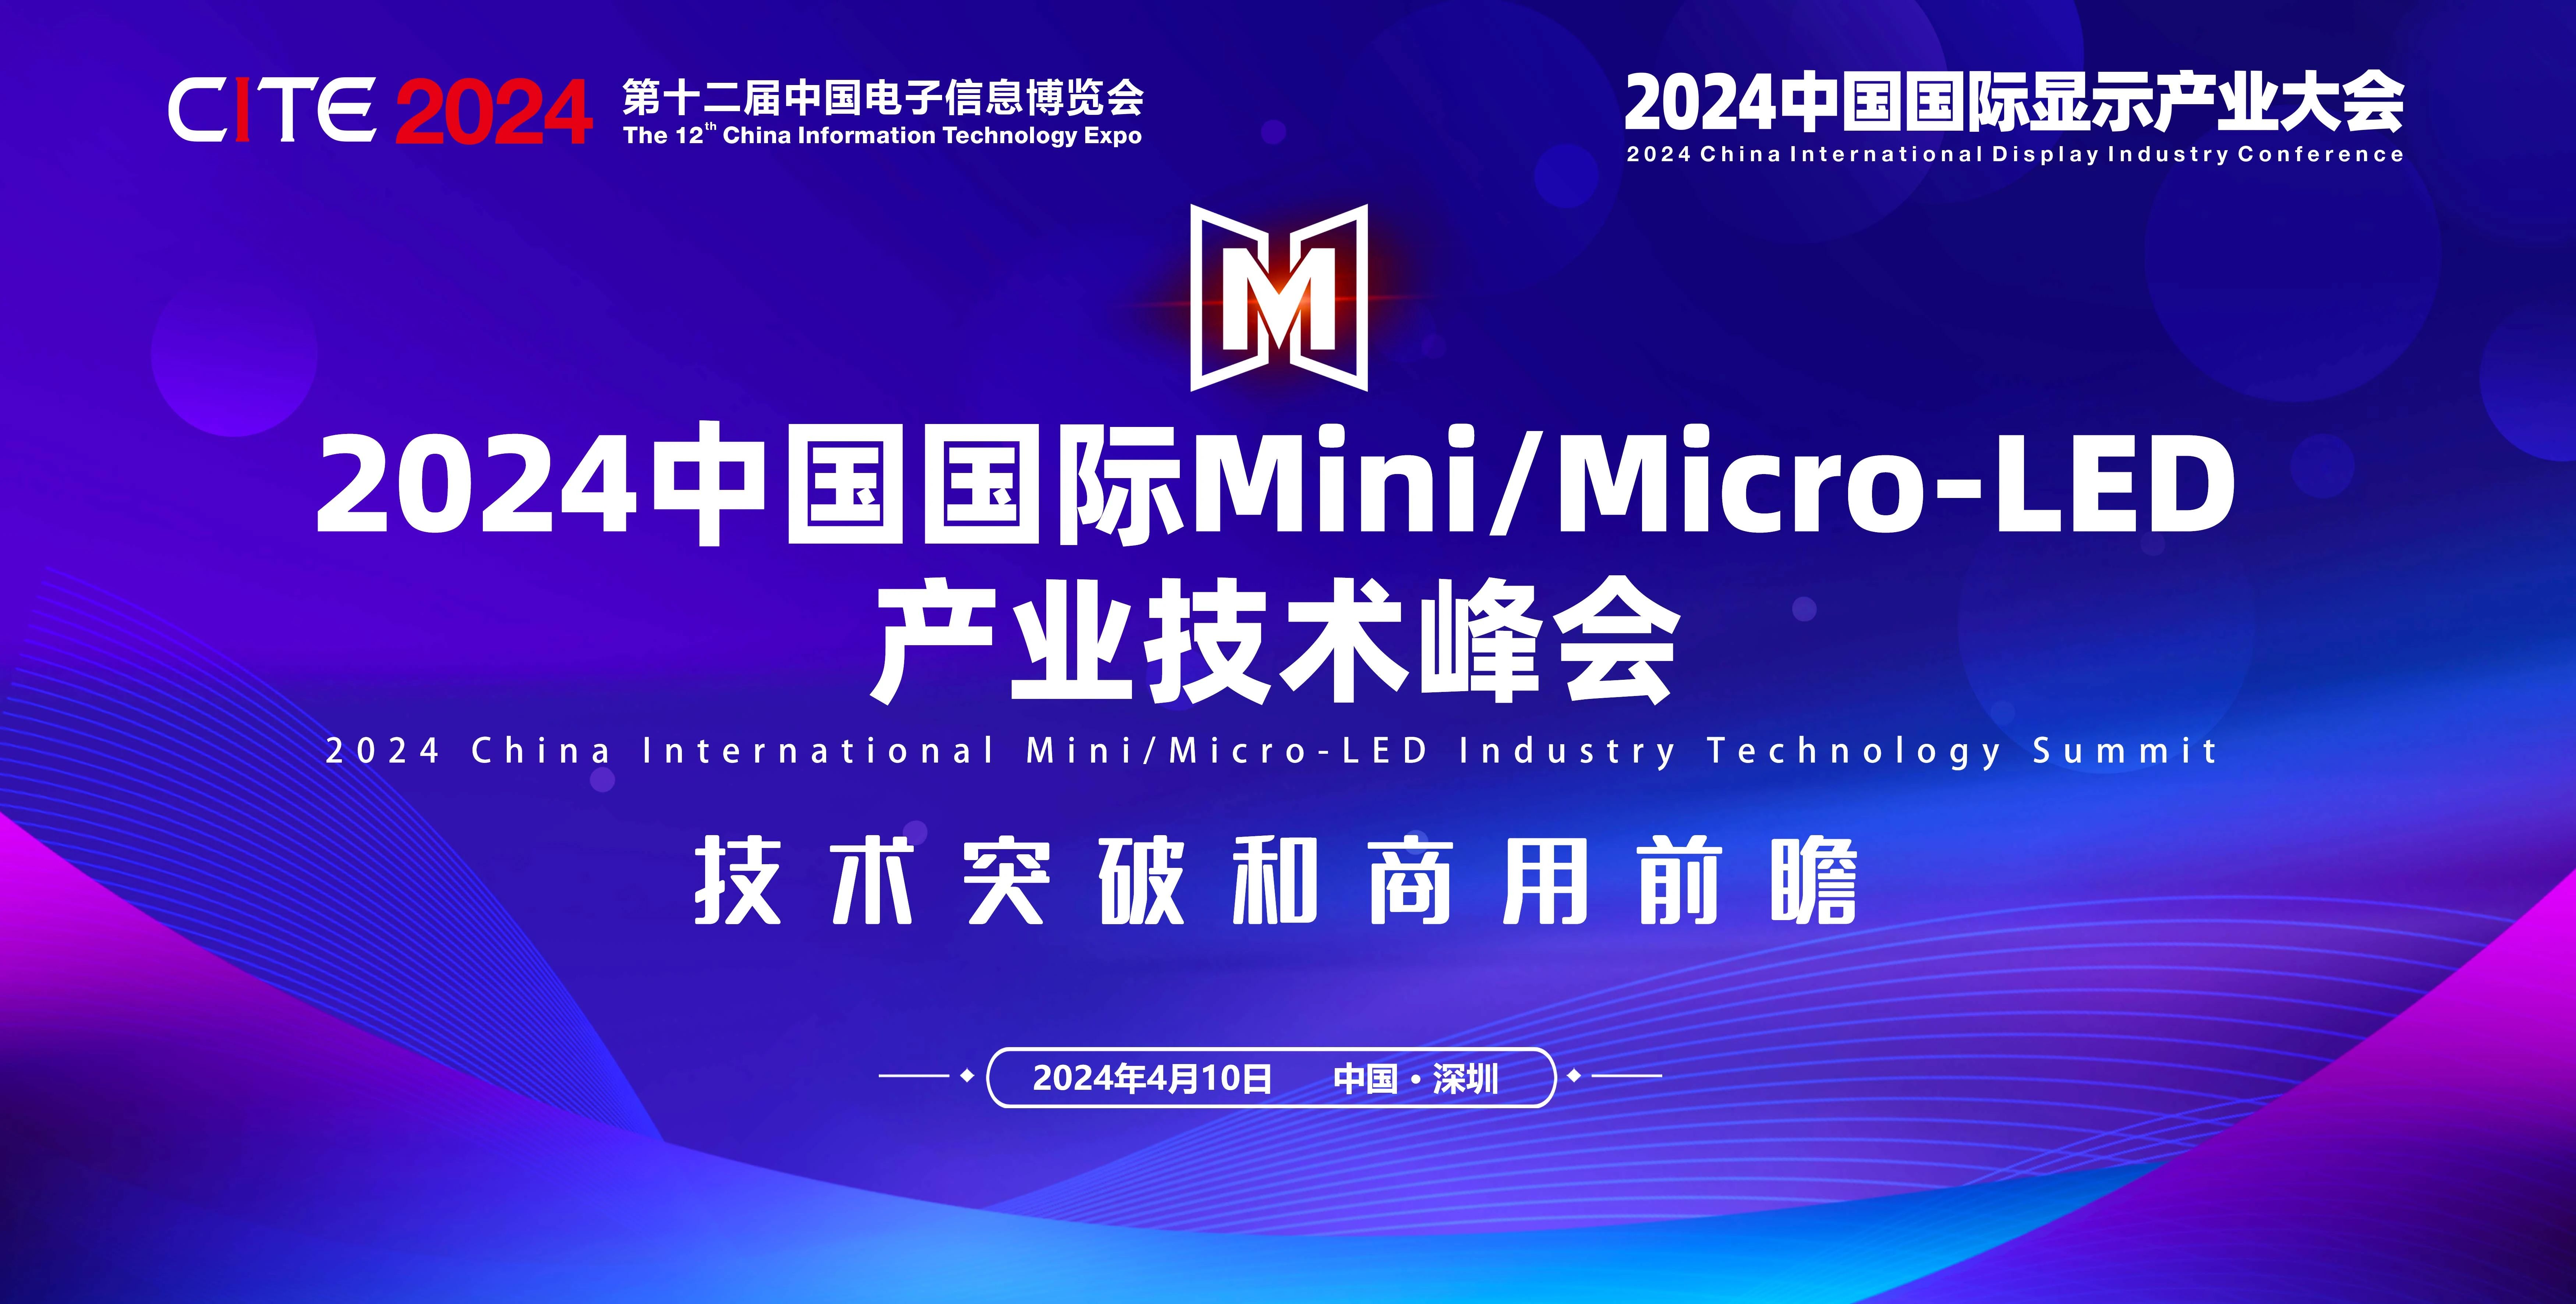 2024中国国际Mini/Micro-LED产业技术峰会